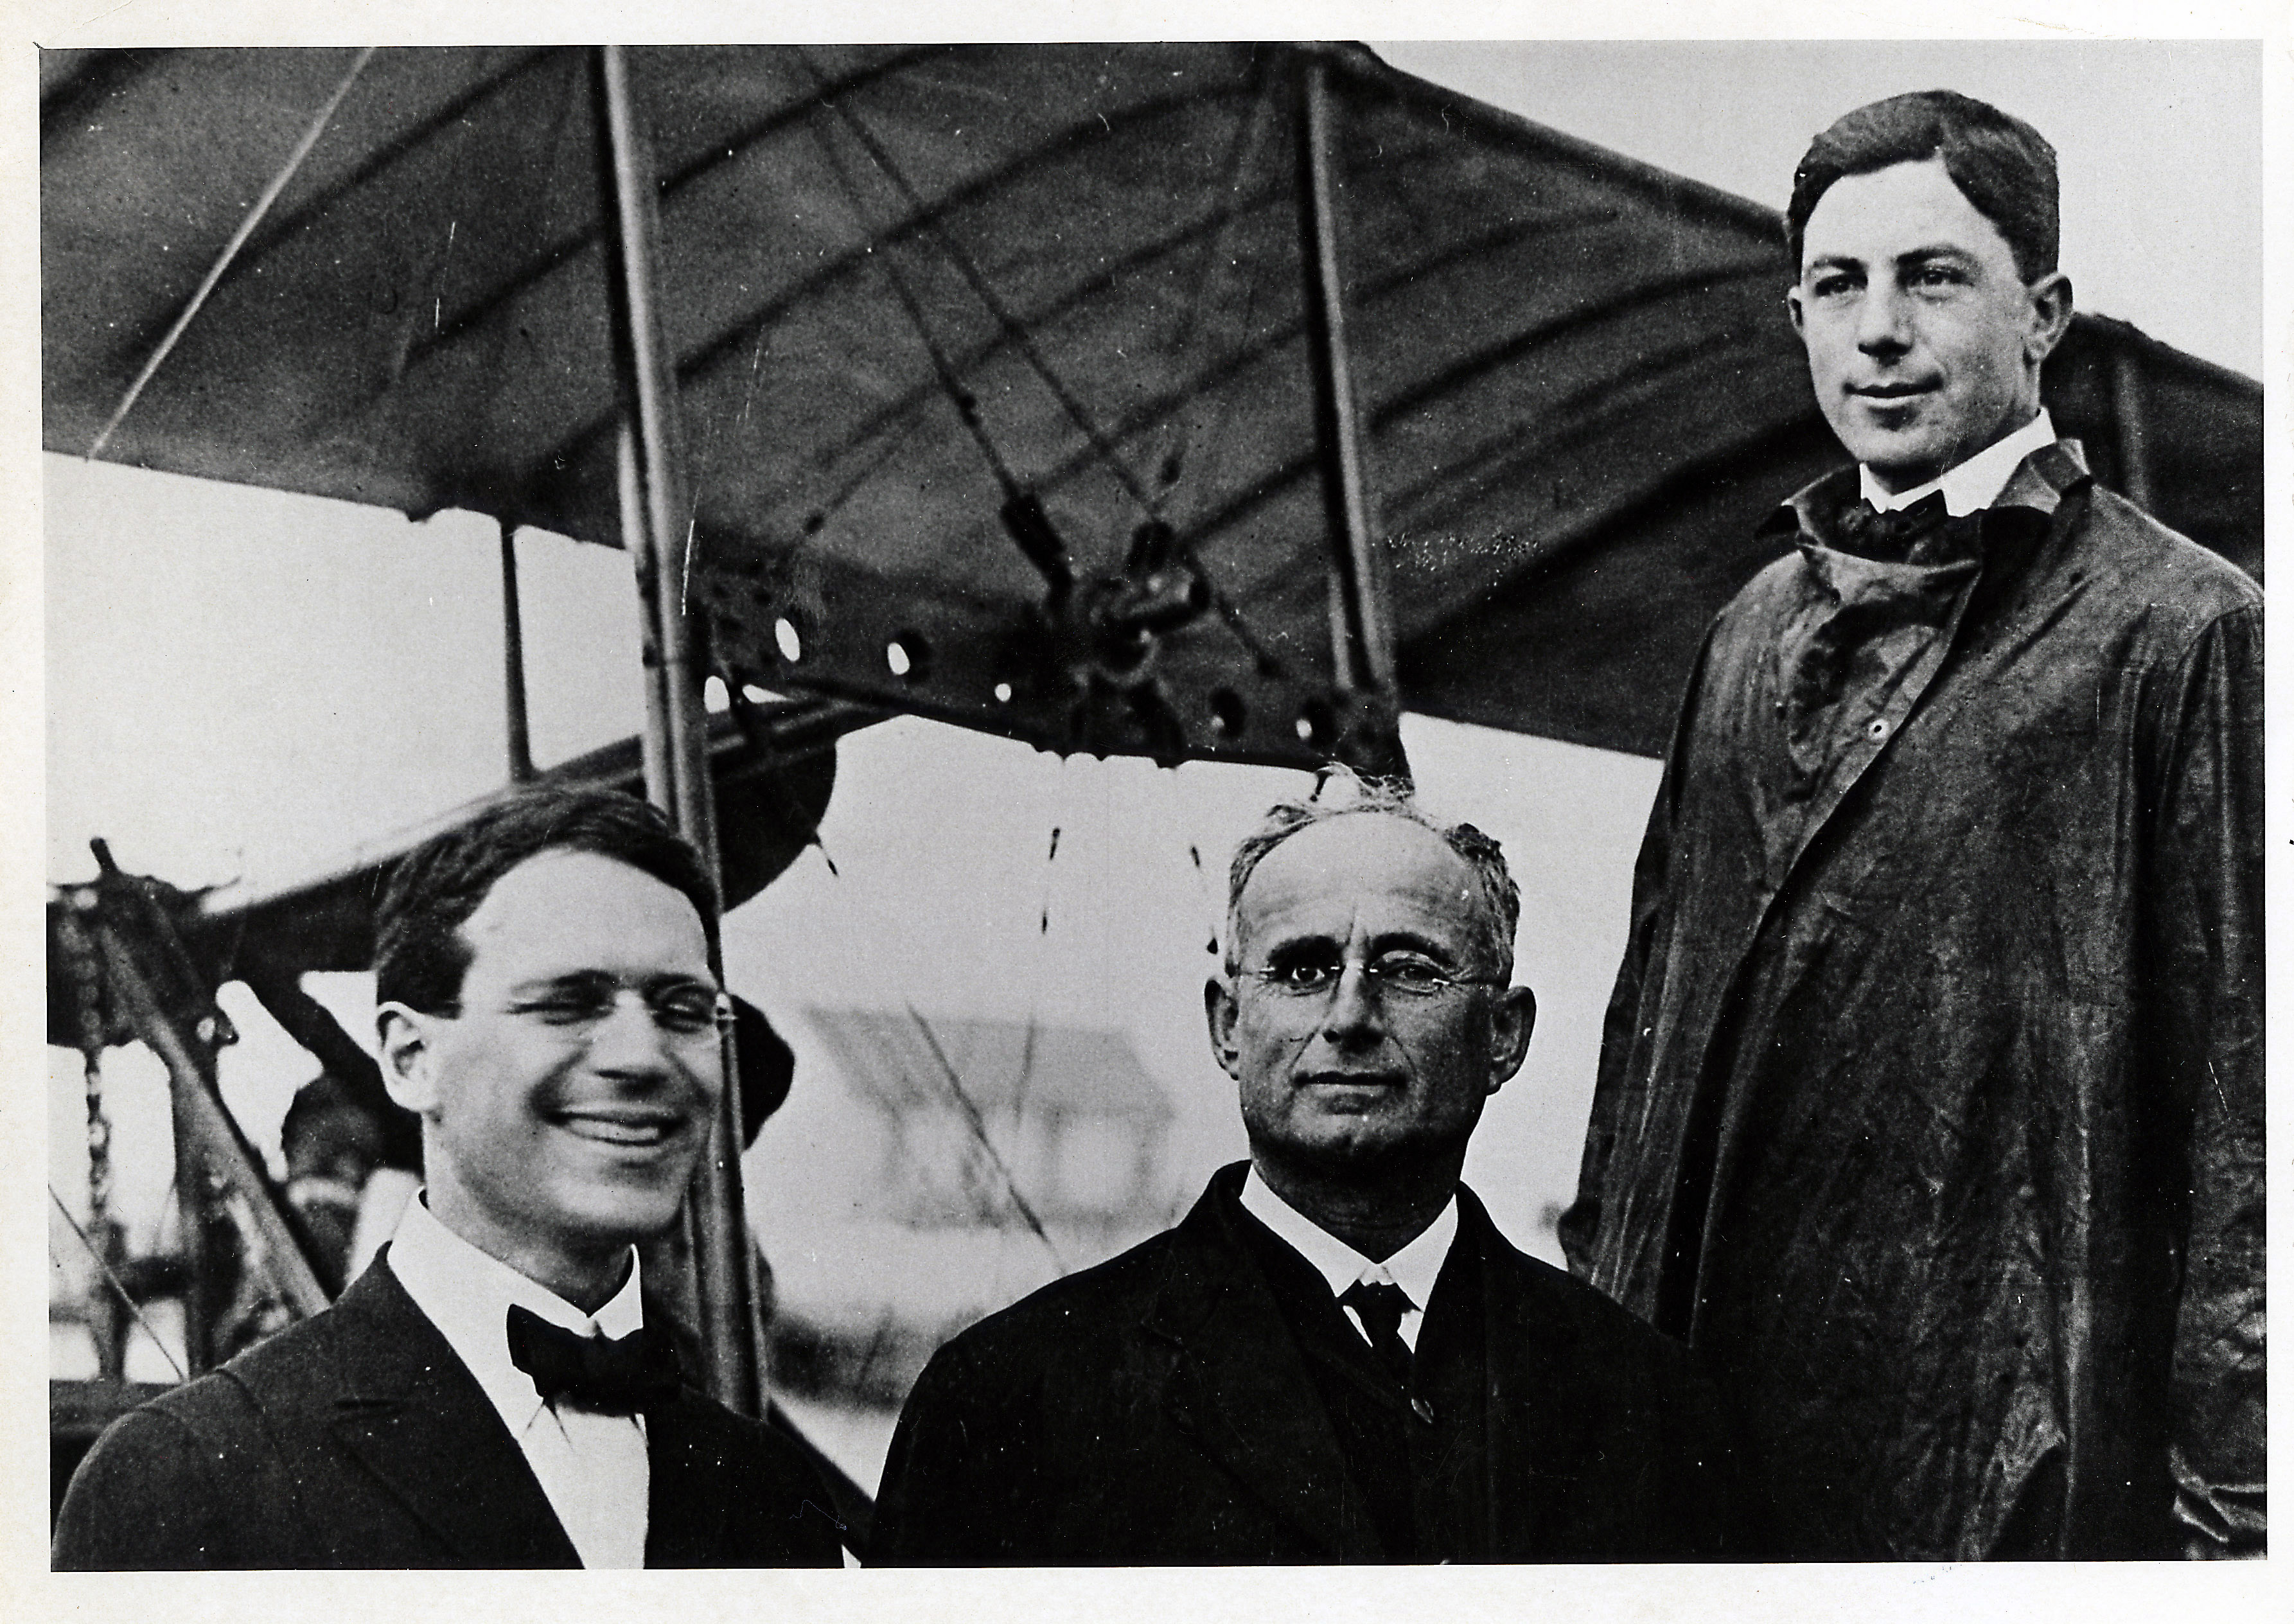 Foto de Percival Elliott Fansler, Abram C. Pheil y Tony Jannus posan antes del vuelo inaugural de St. Petersburg-Tampa Airboat Line, la primera aerolínea del mundo.